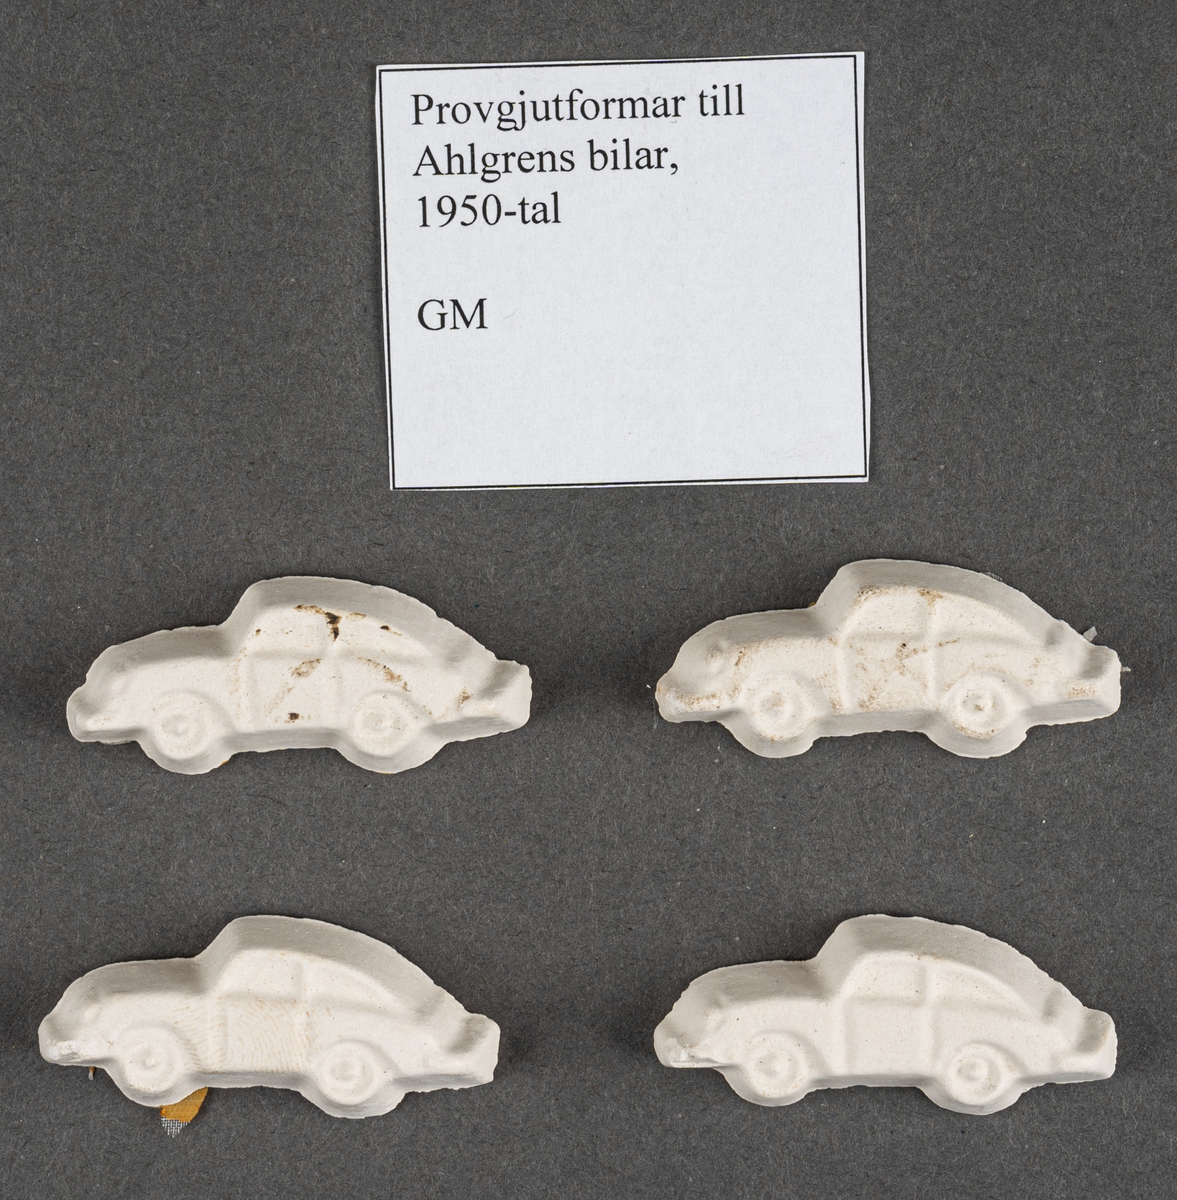 Provgjutningsformar, fyra stycken, till Ahlgrens bilar. Från 1950-talet.